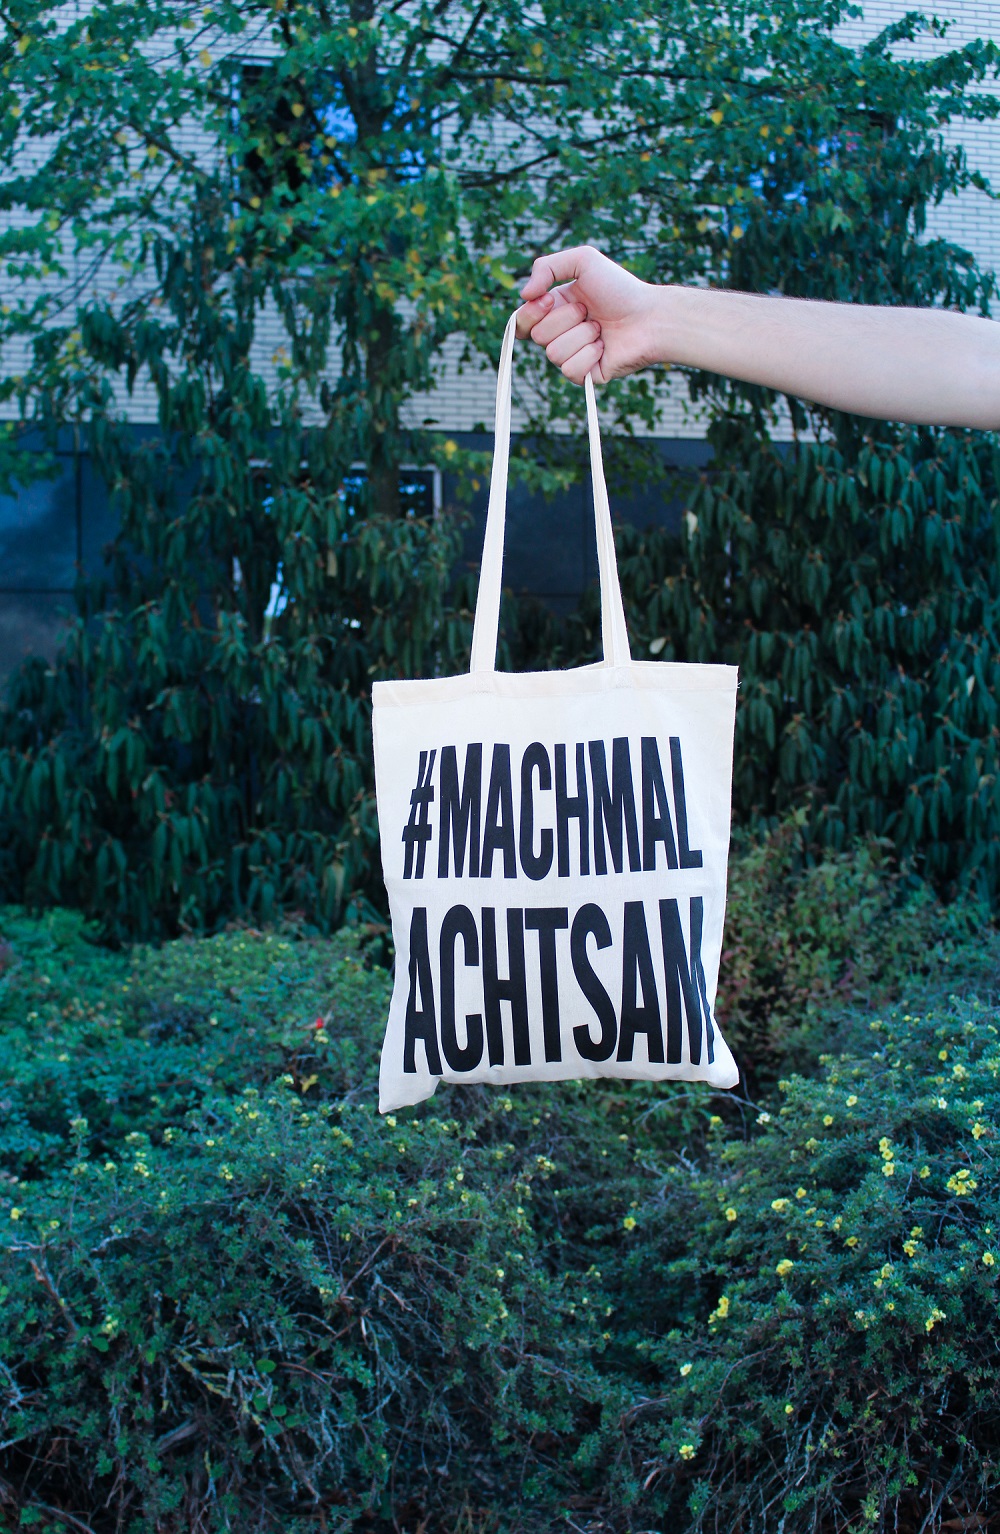 Stofftasche mit Slogan #machmalachtsam